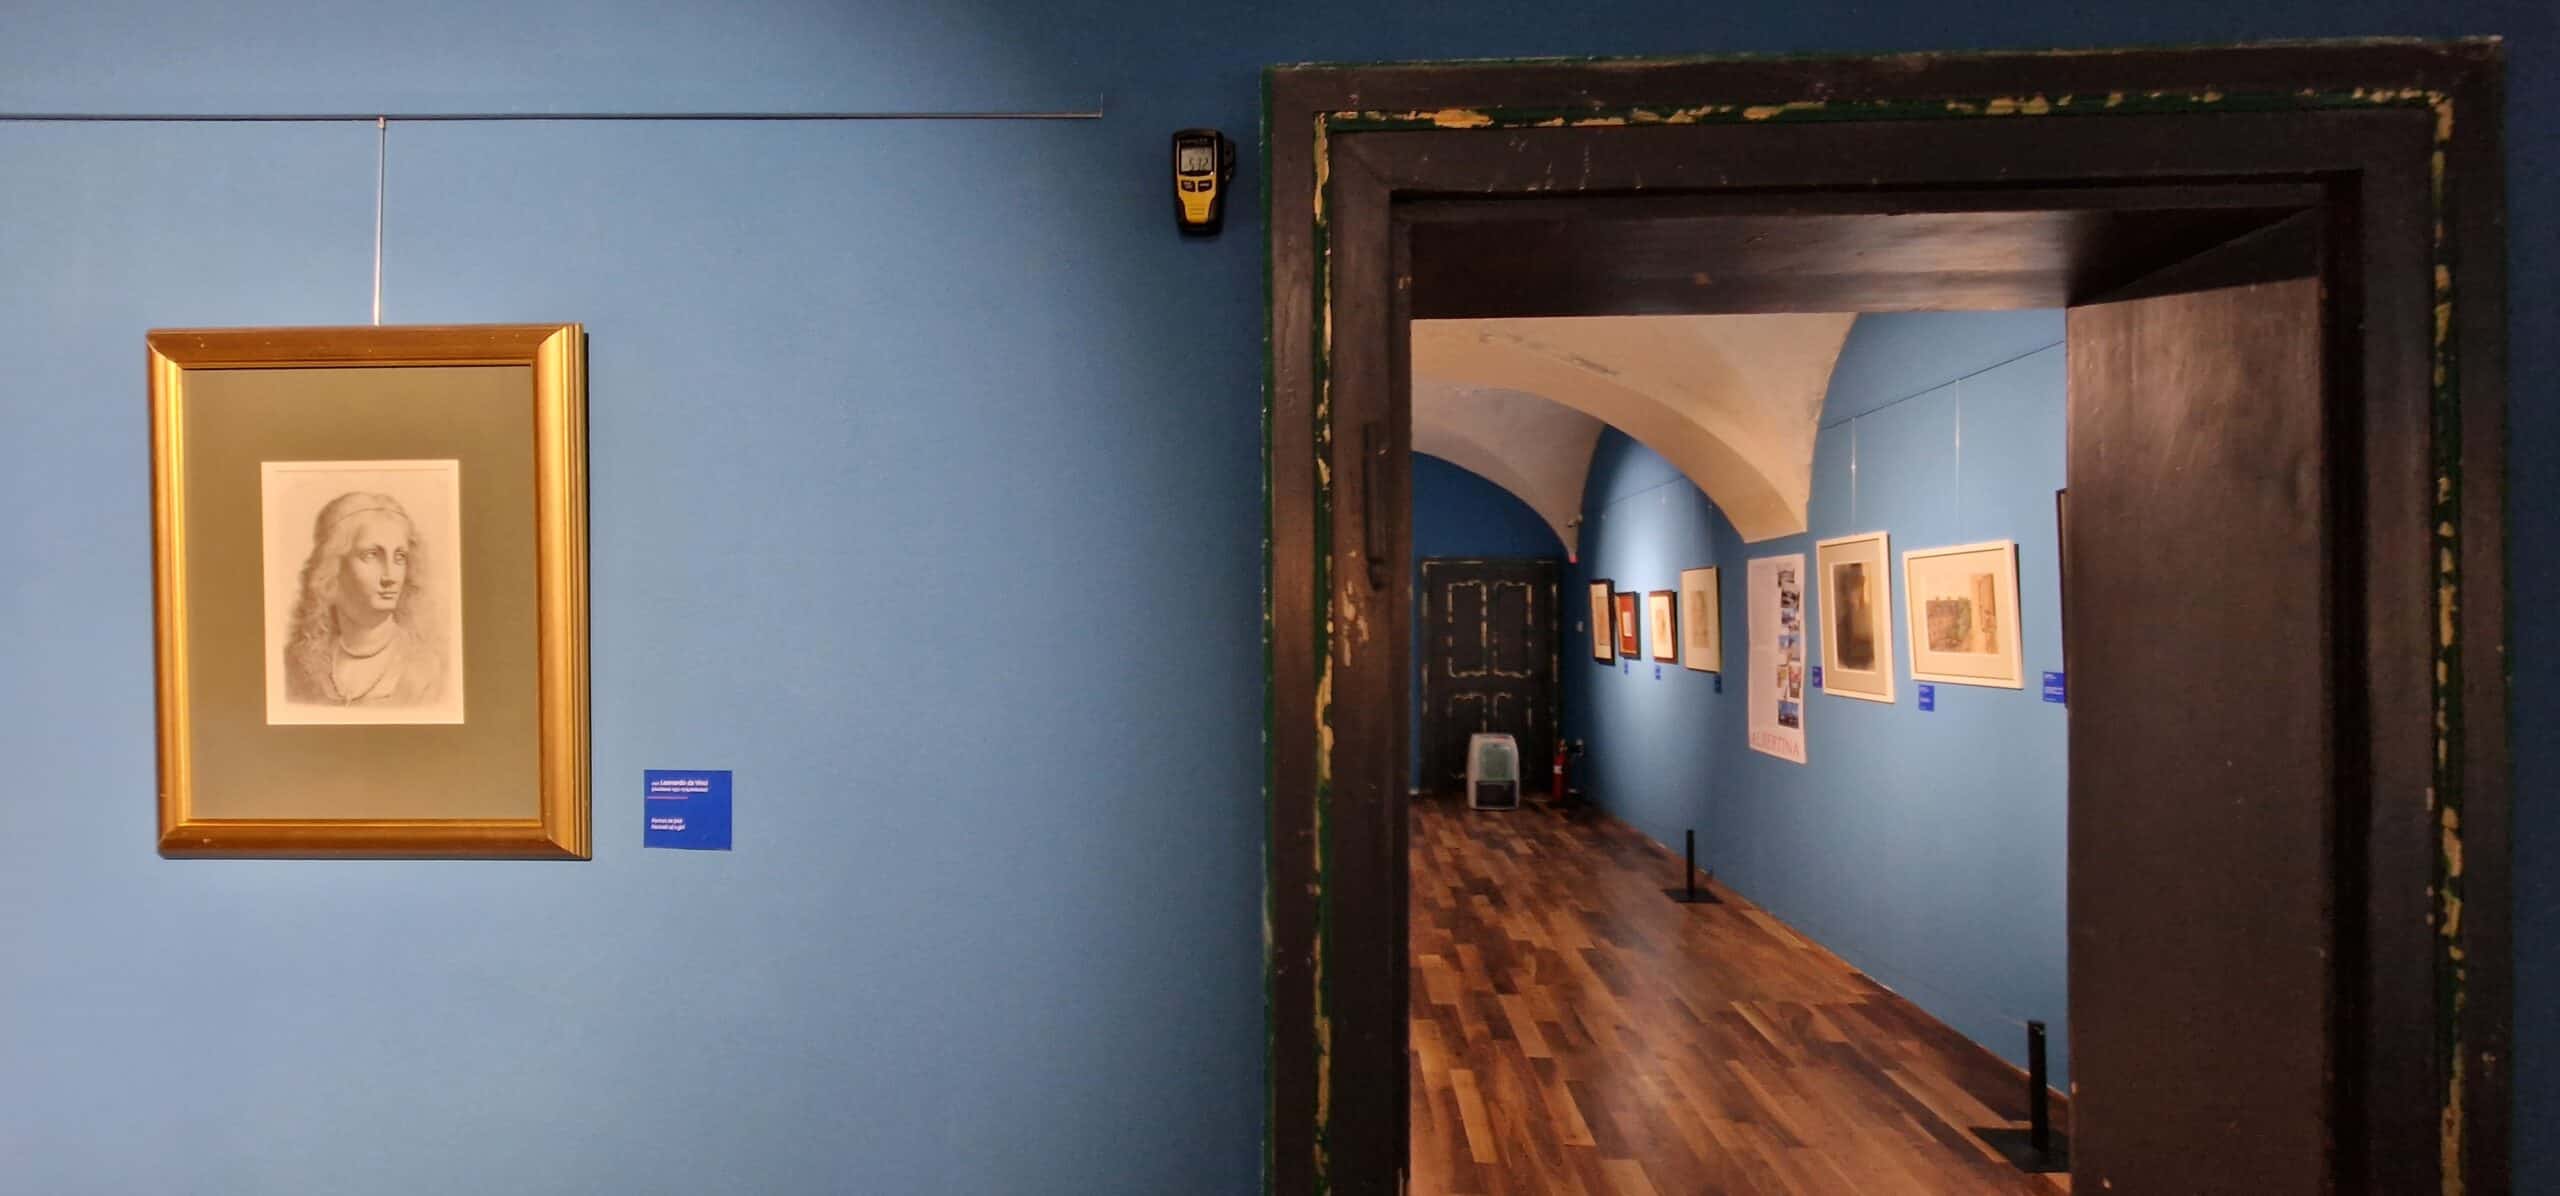 ghidul sibianului curios: tablouri expuse in premieră la muzeul brukenthal. lucrări de michelangelo şi leonardo da vinci printre ele (video foto)